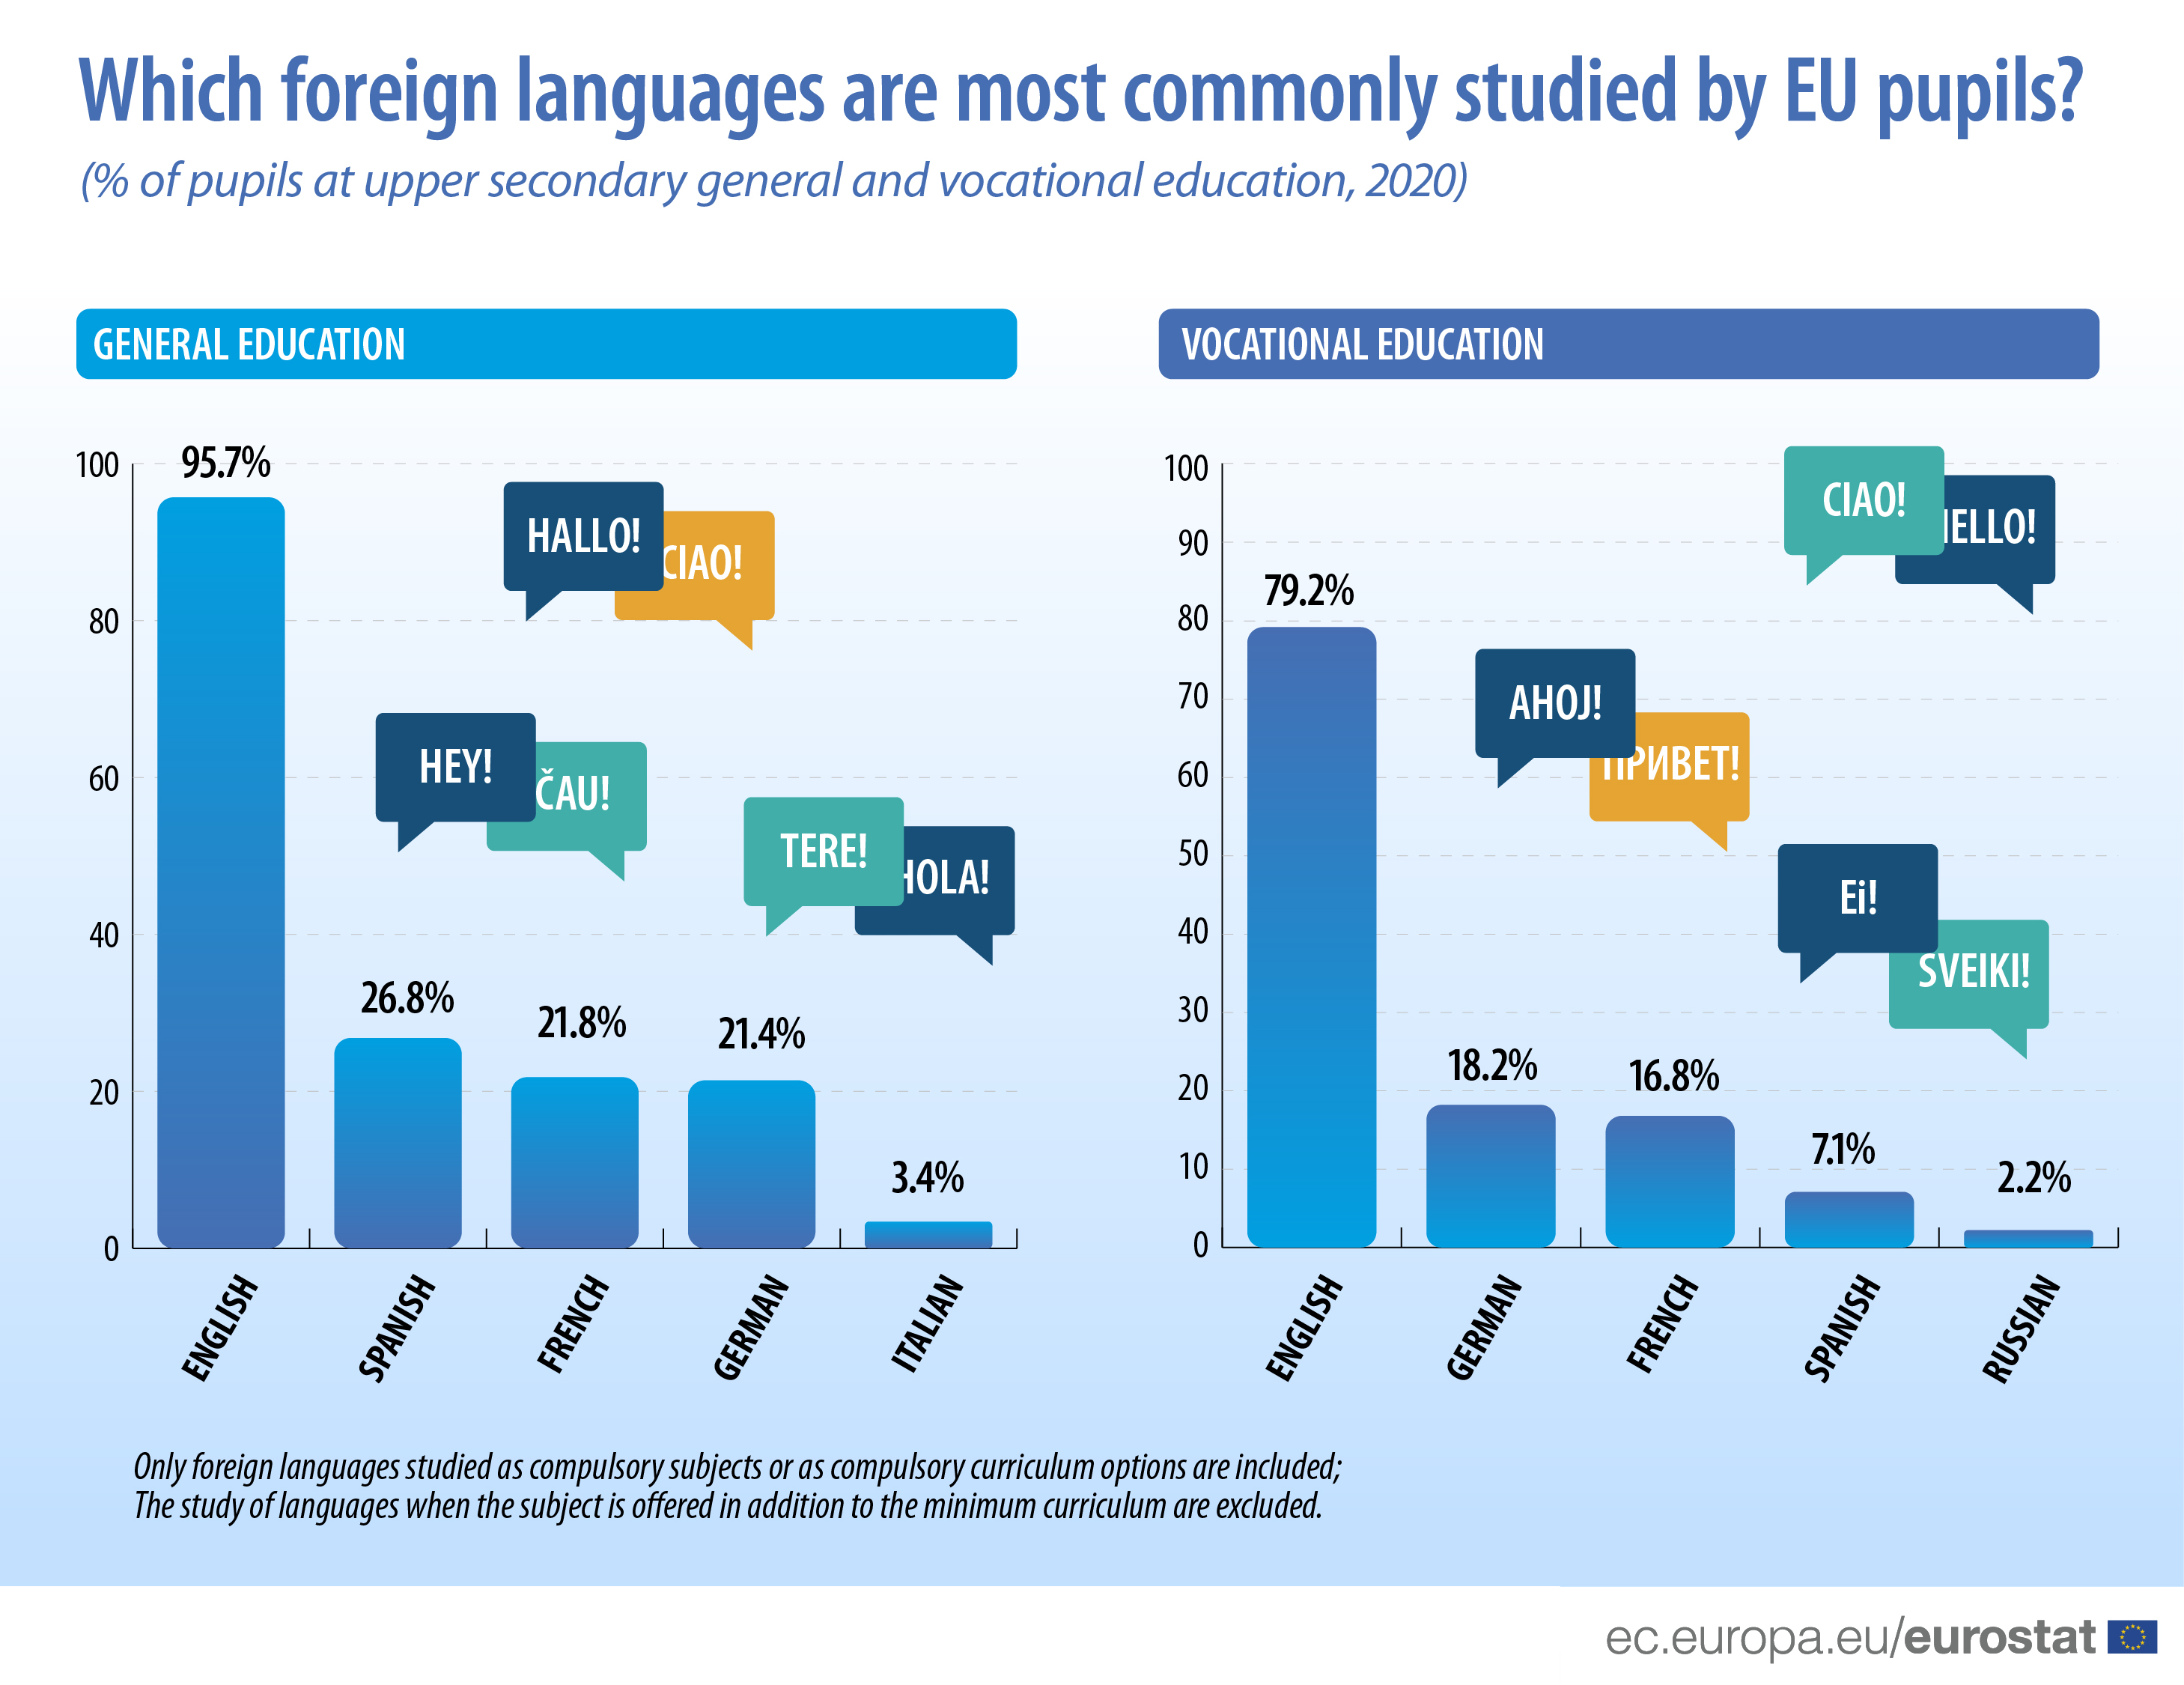 Diagramme à barres : études de langues étrangères les plus courantes par les élèves de l'UE (% d'élèves dans l'enseignement secondaire supérieur général et professionnel, 2020)